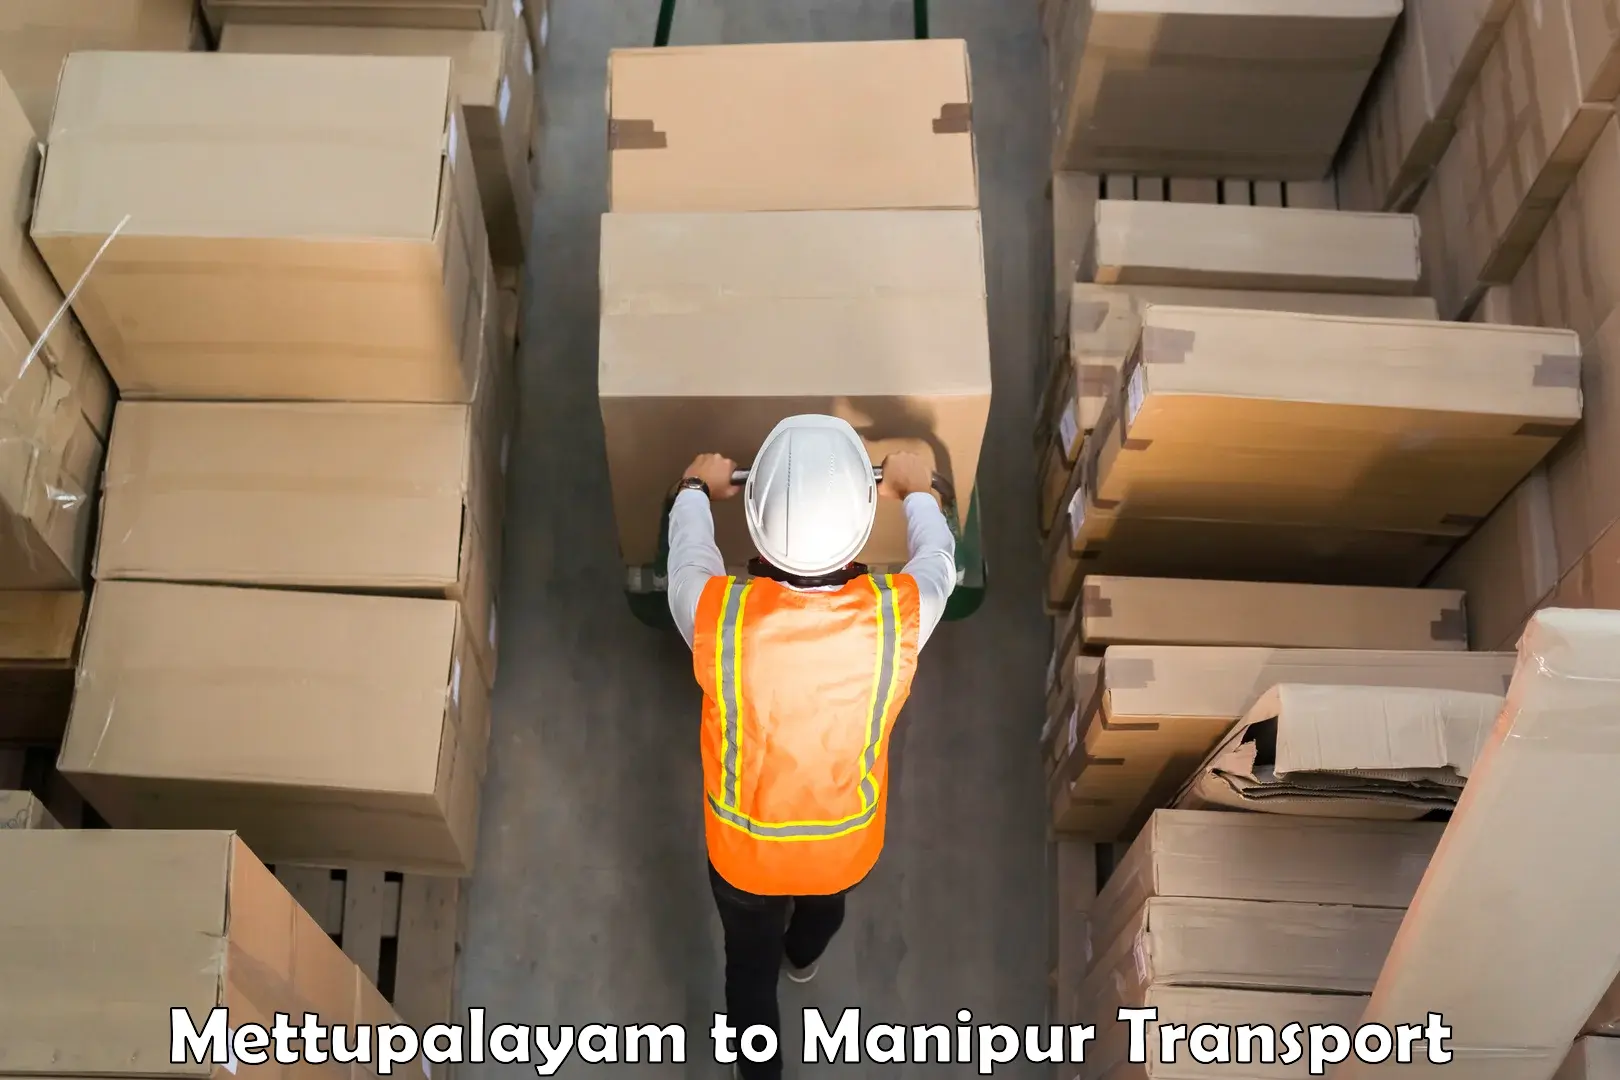 Furniture transport service Mettupalayam to Kanti